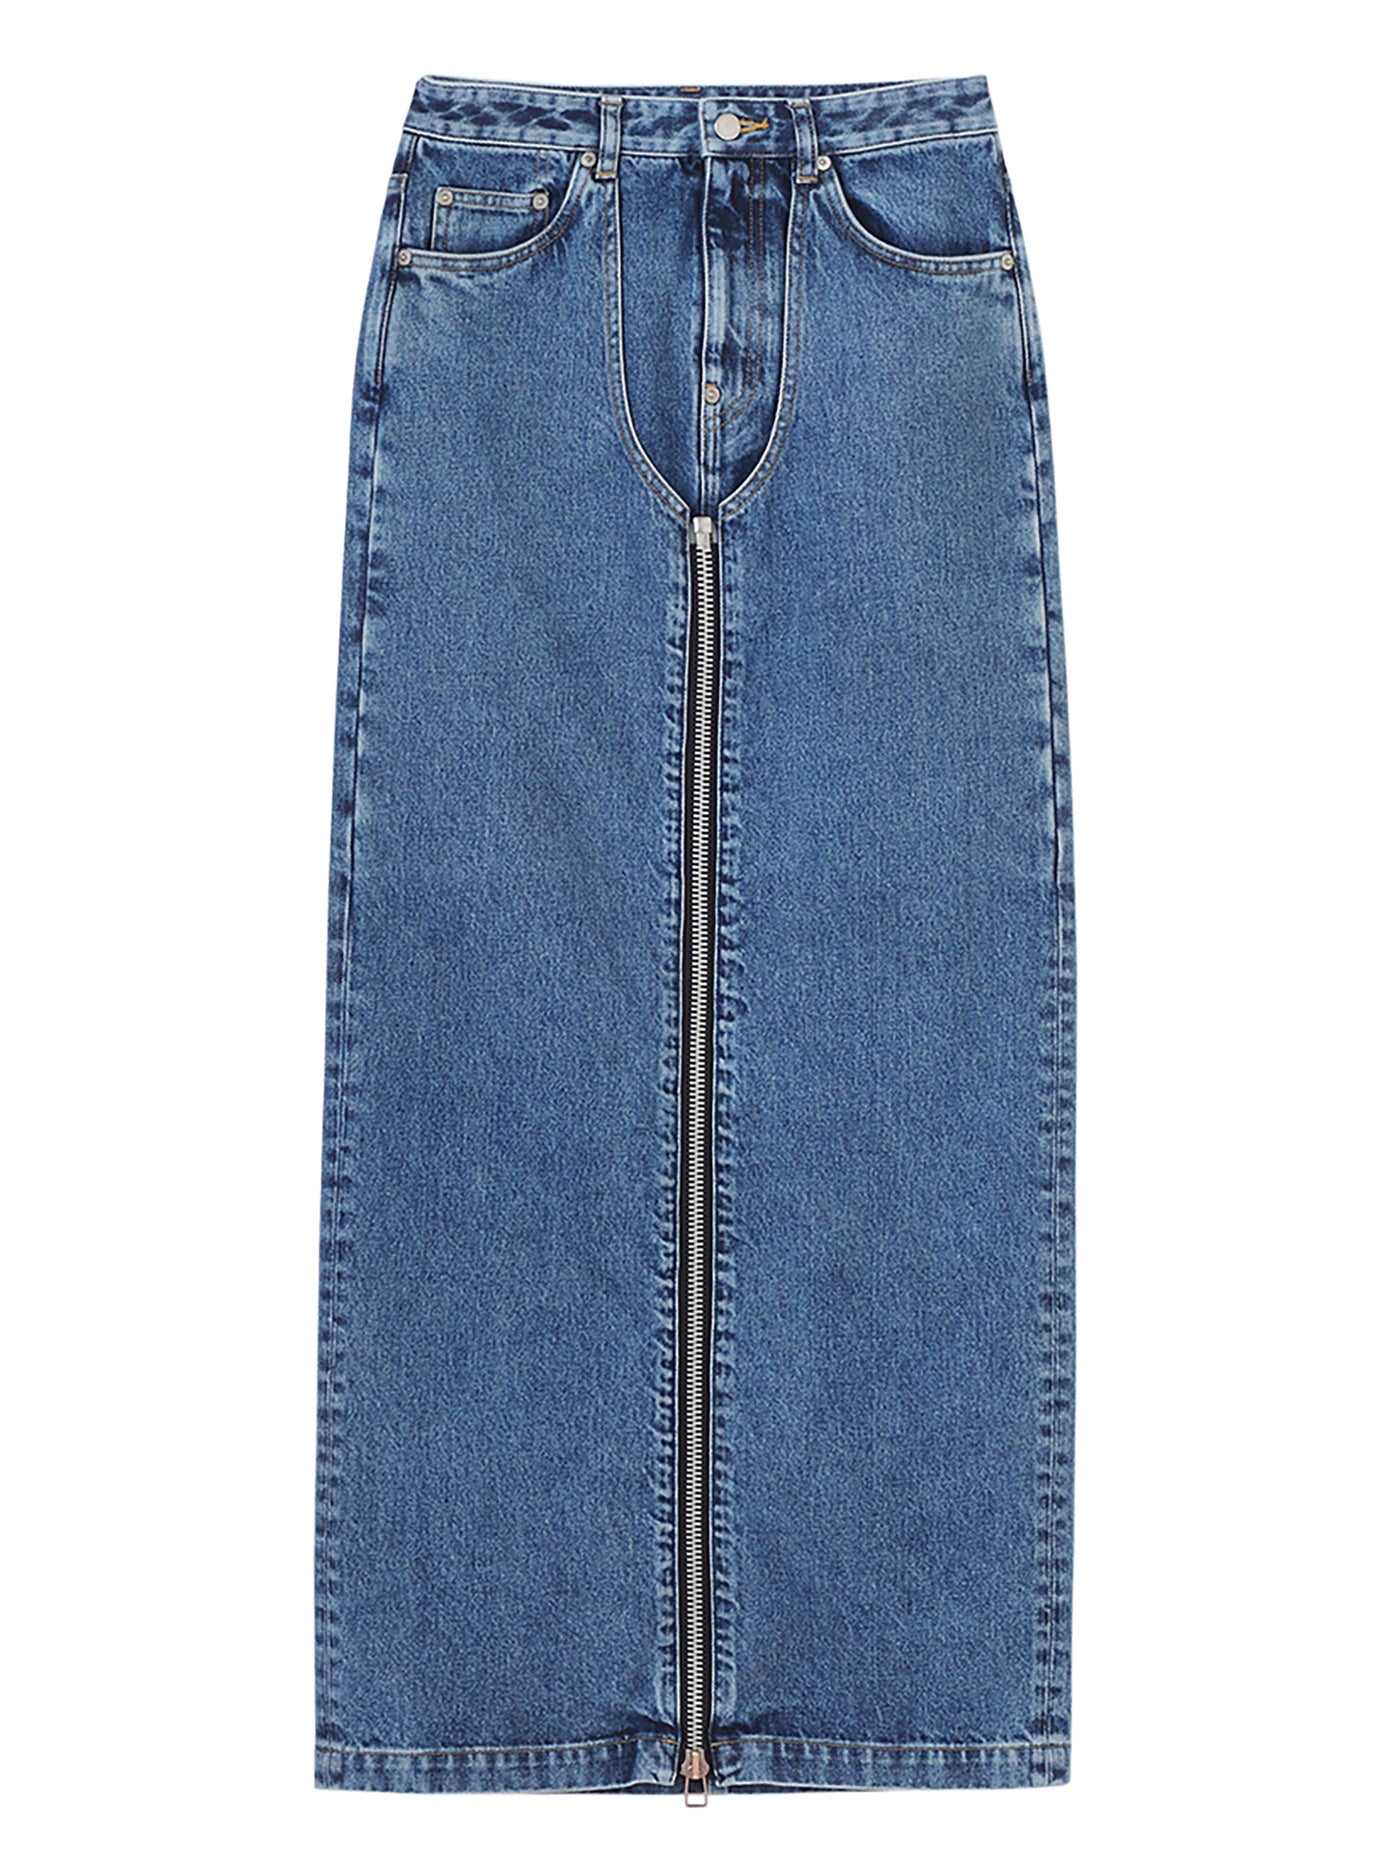 Split Front Deep Blue Slash Pocket Denim Skirt Causal Washed